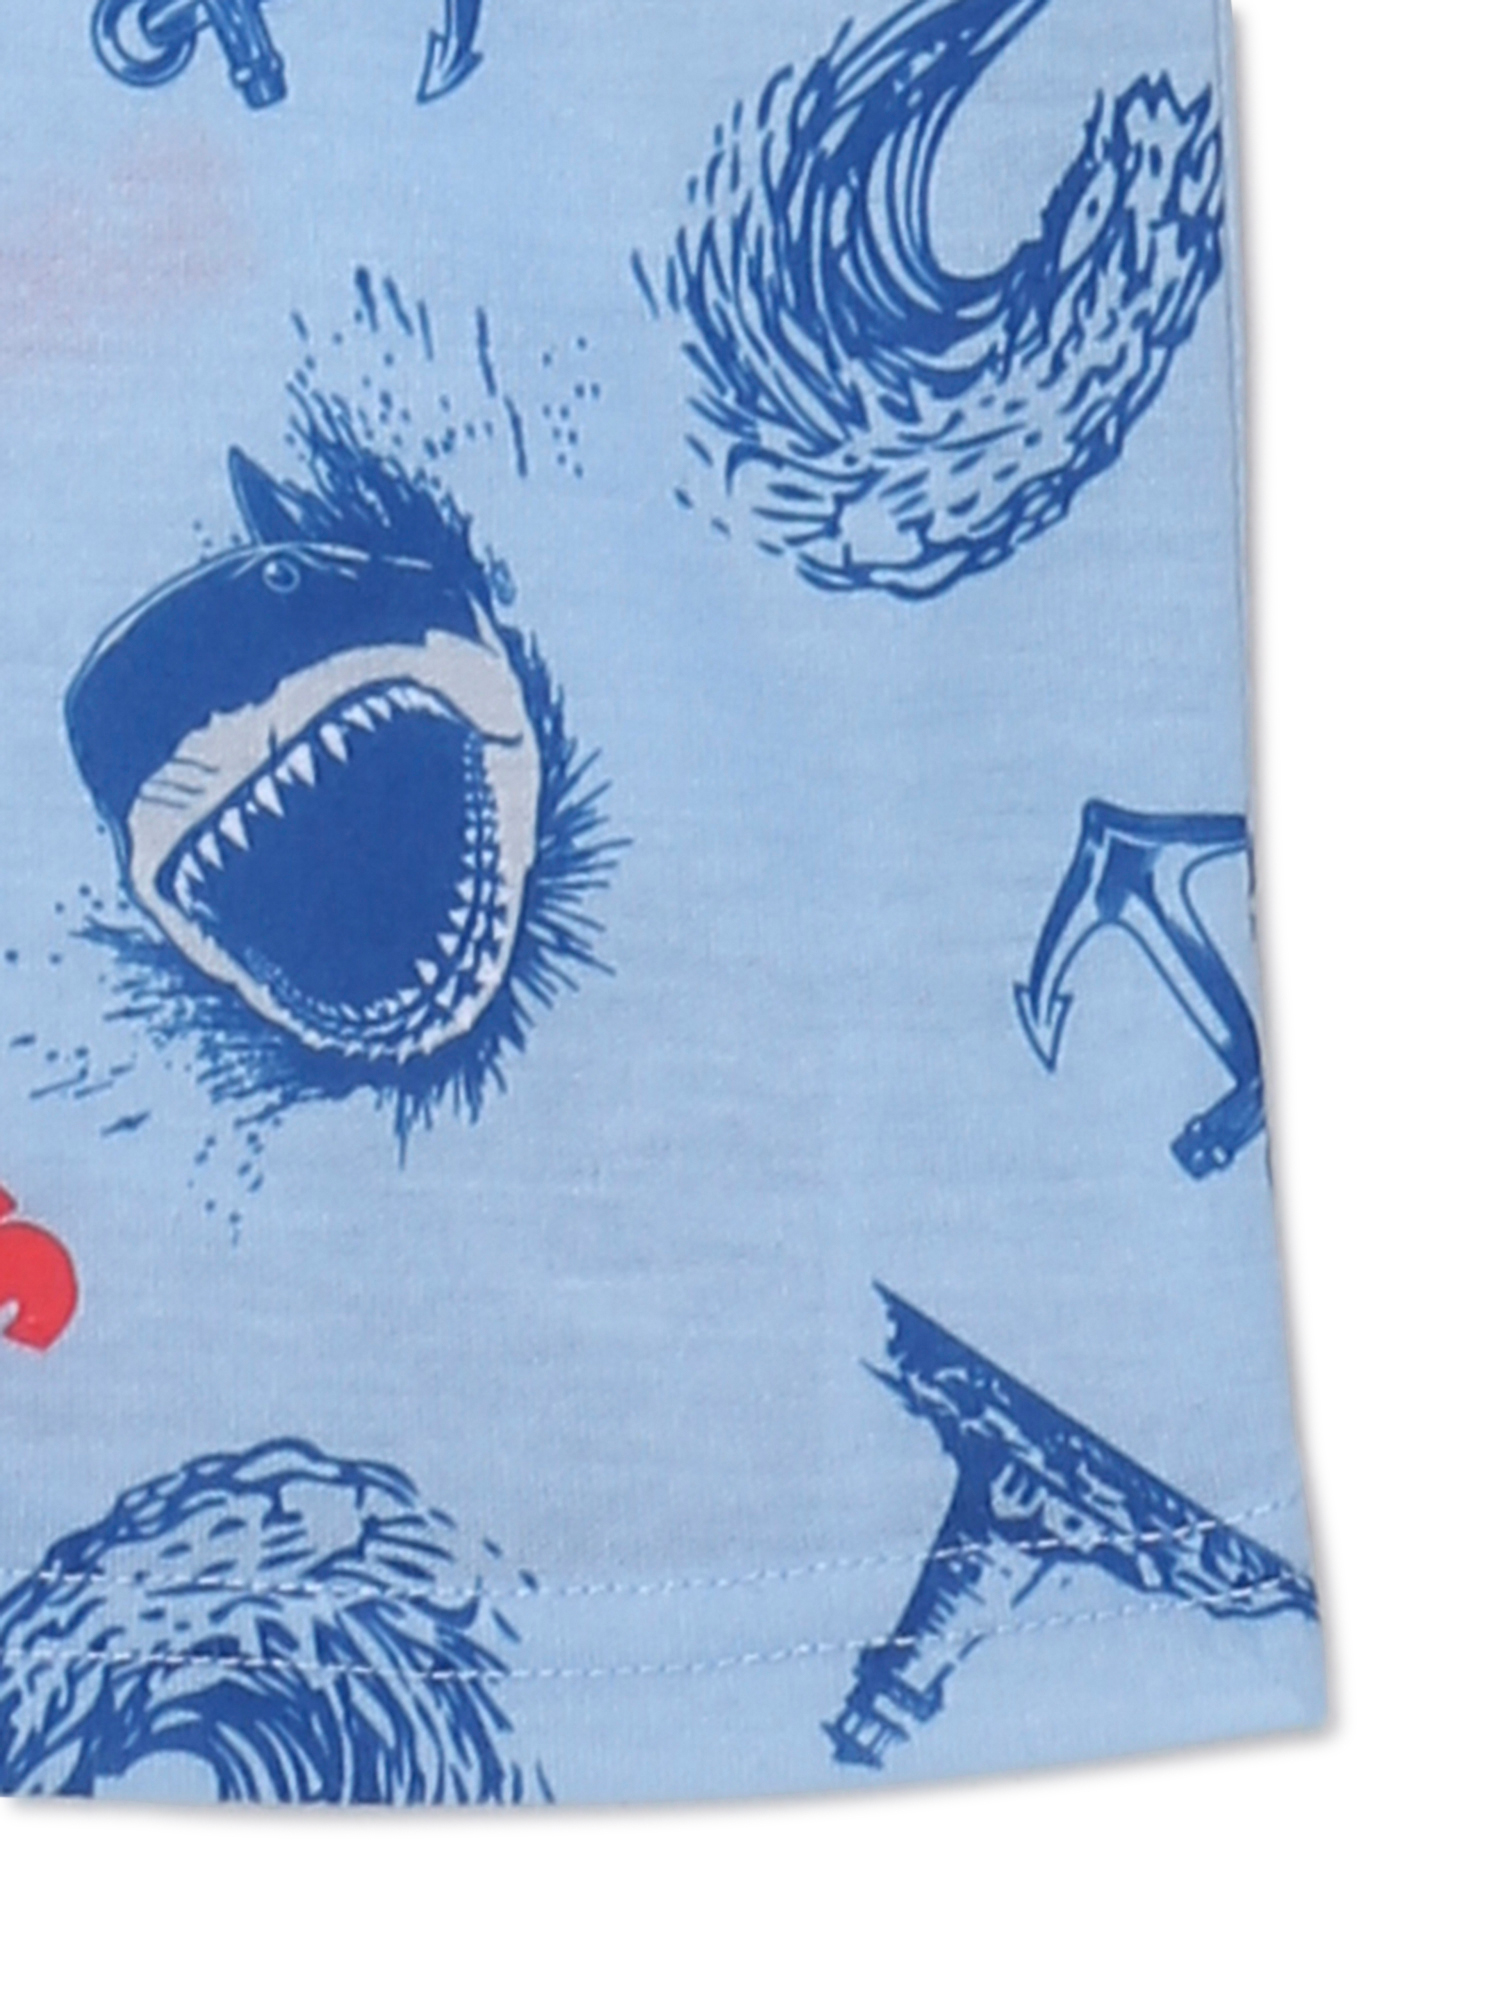 Jaws Boys Short Sleeve T-Shirt and Shorts Pajama Set, 2-Piece, Sizes 4-12 - image 2 of 3